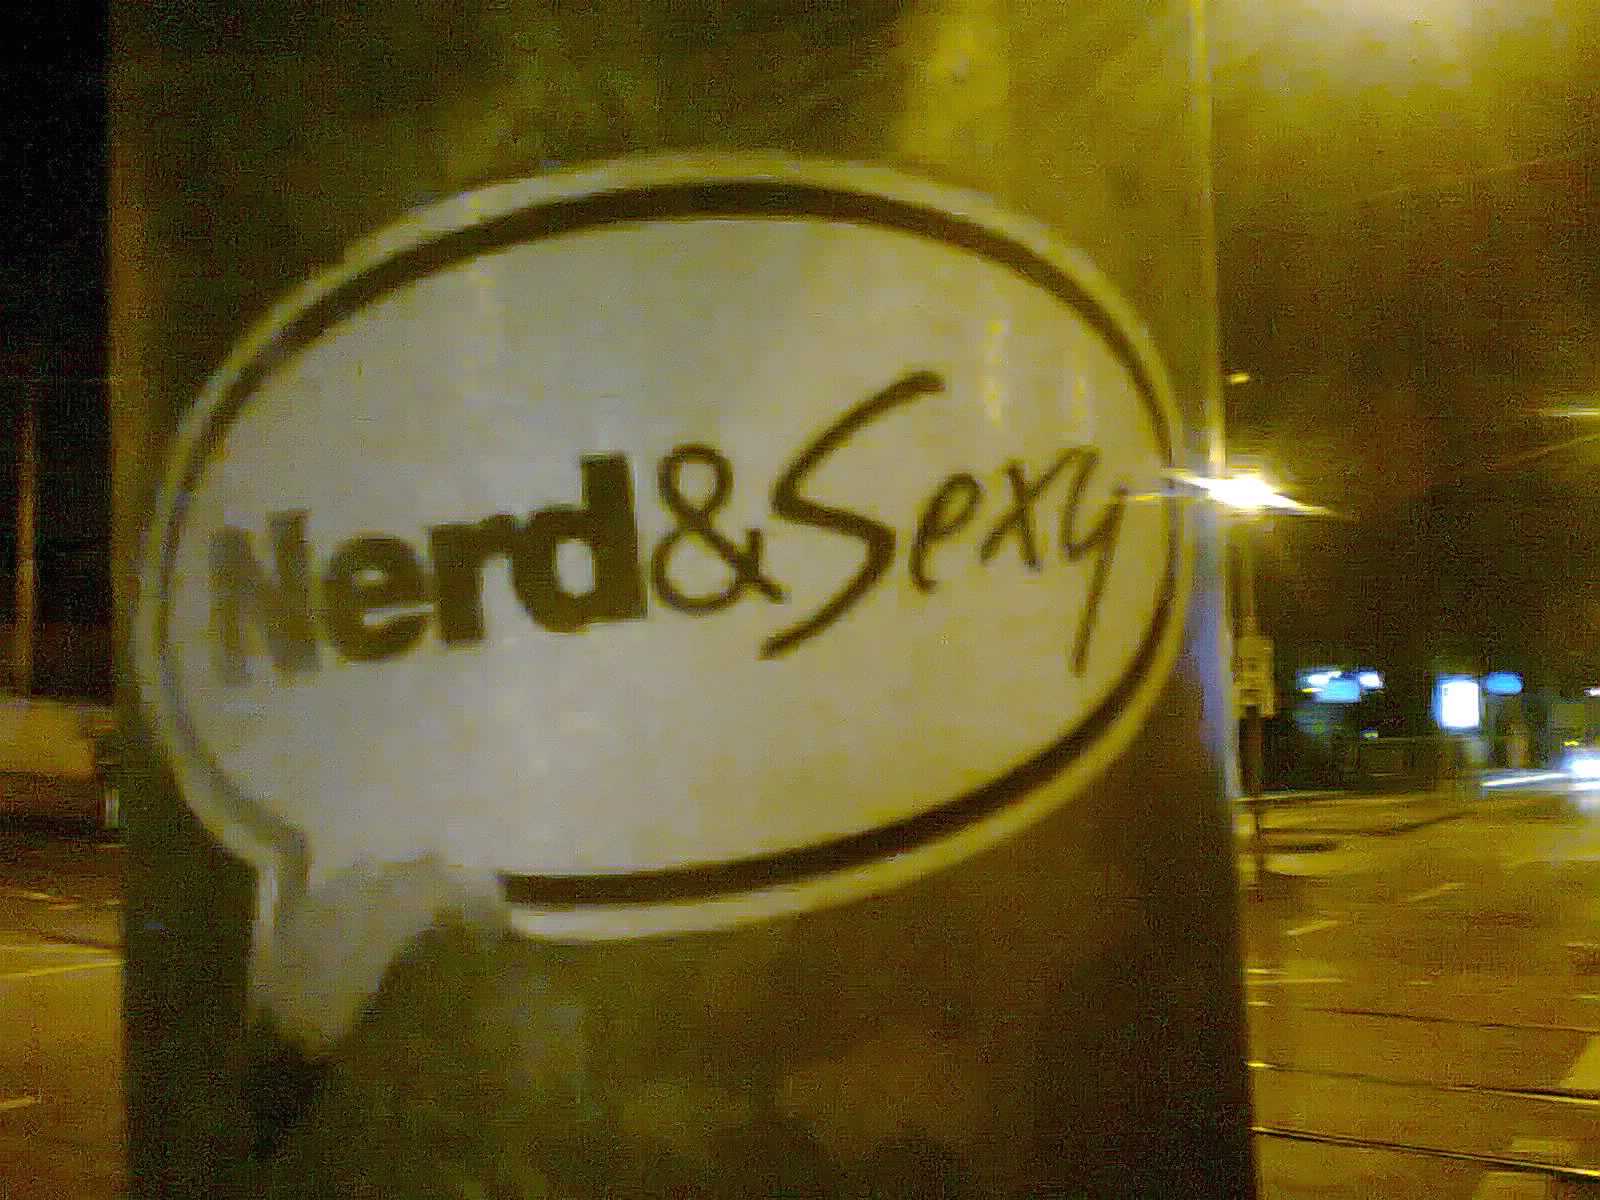 Nerd & Sexy